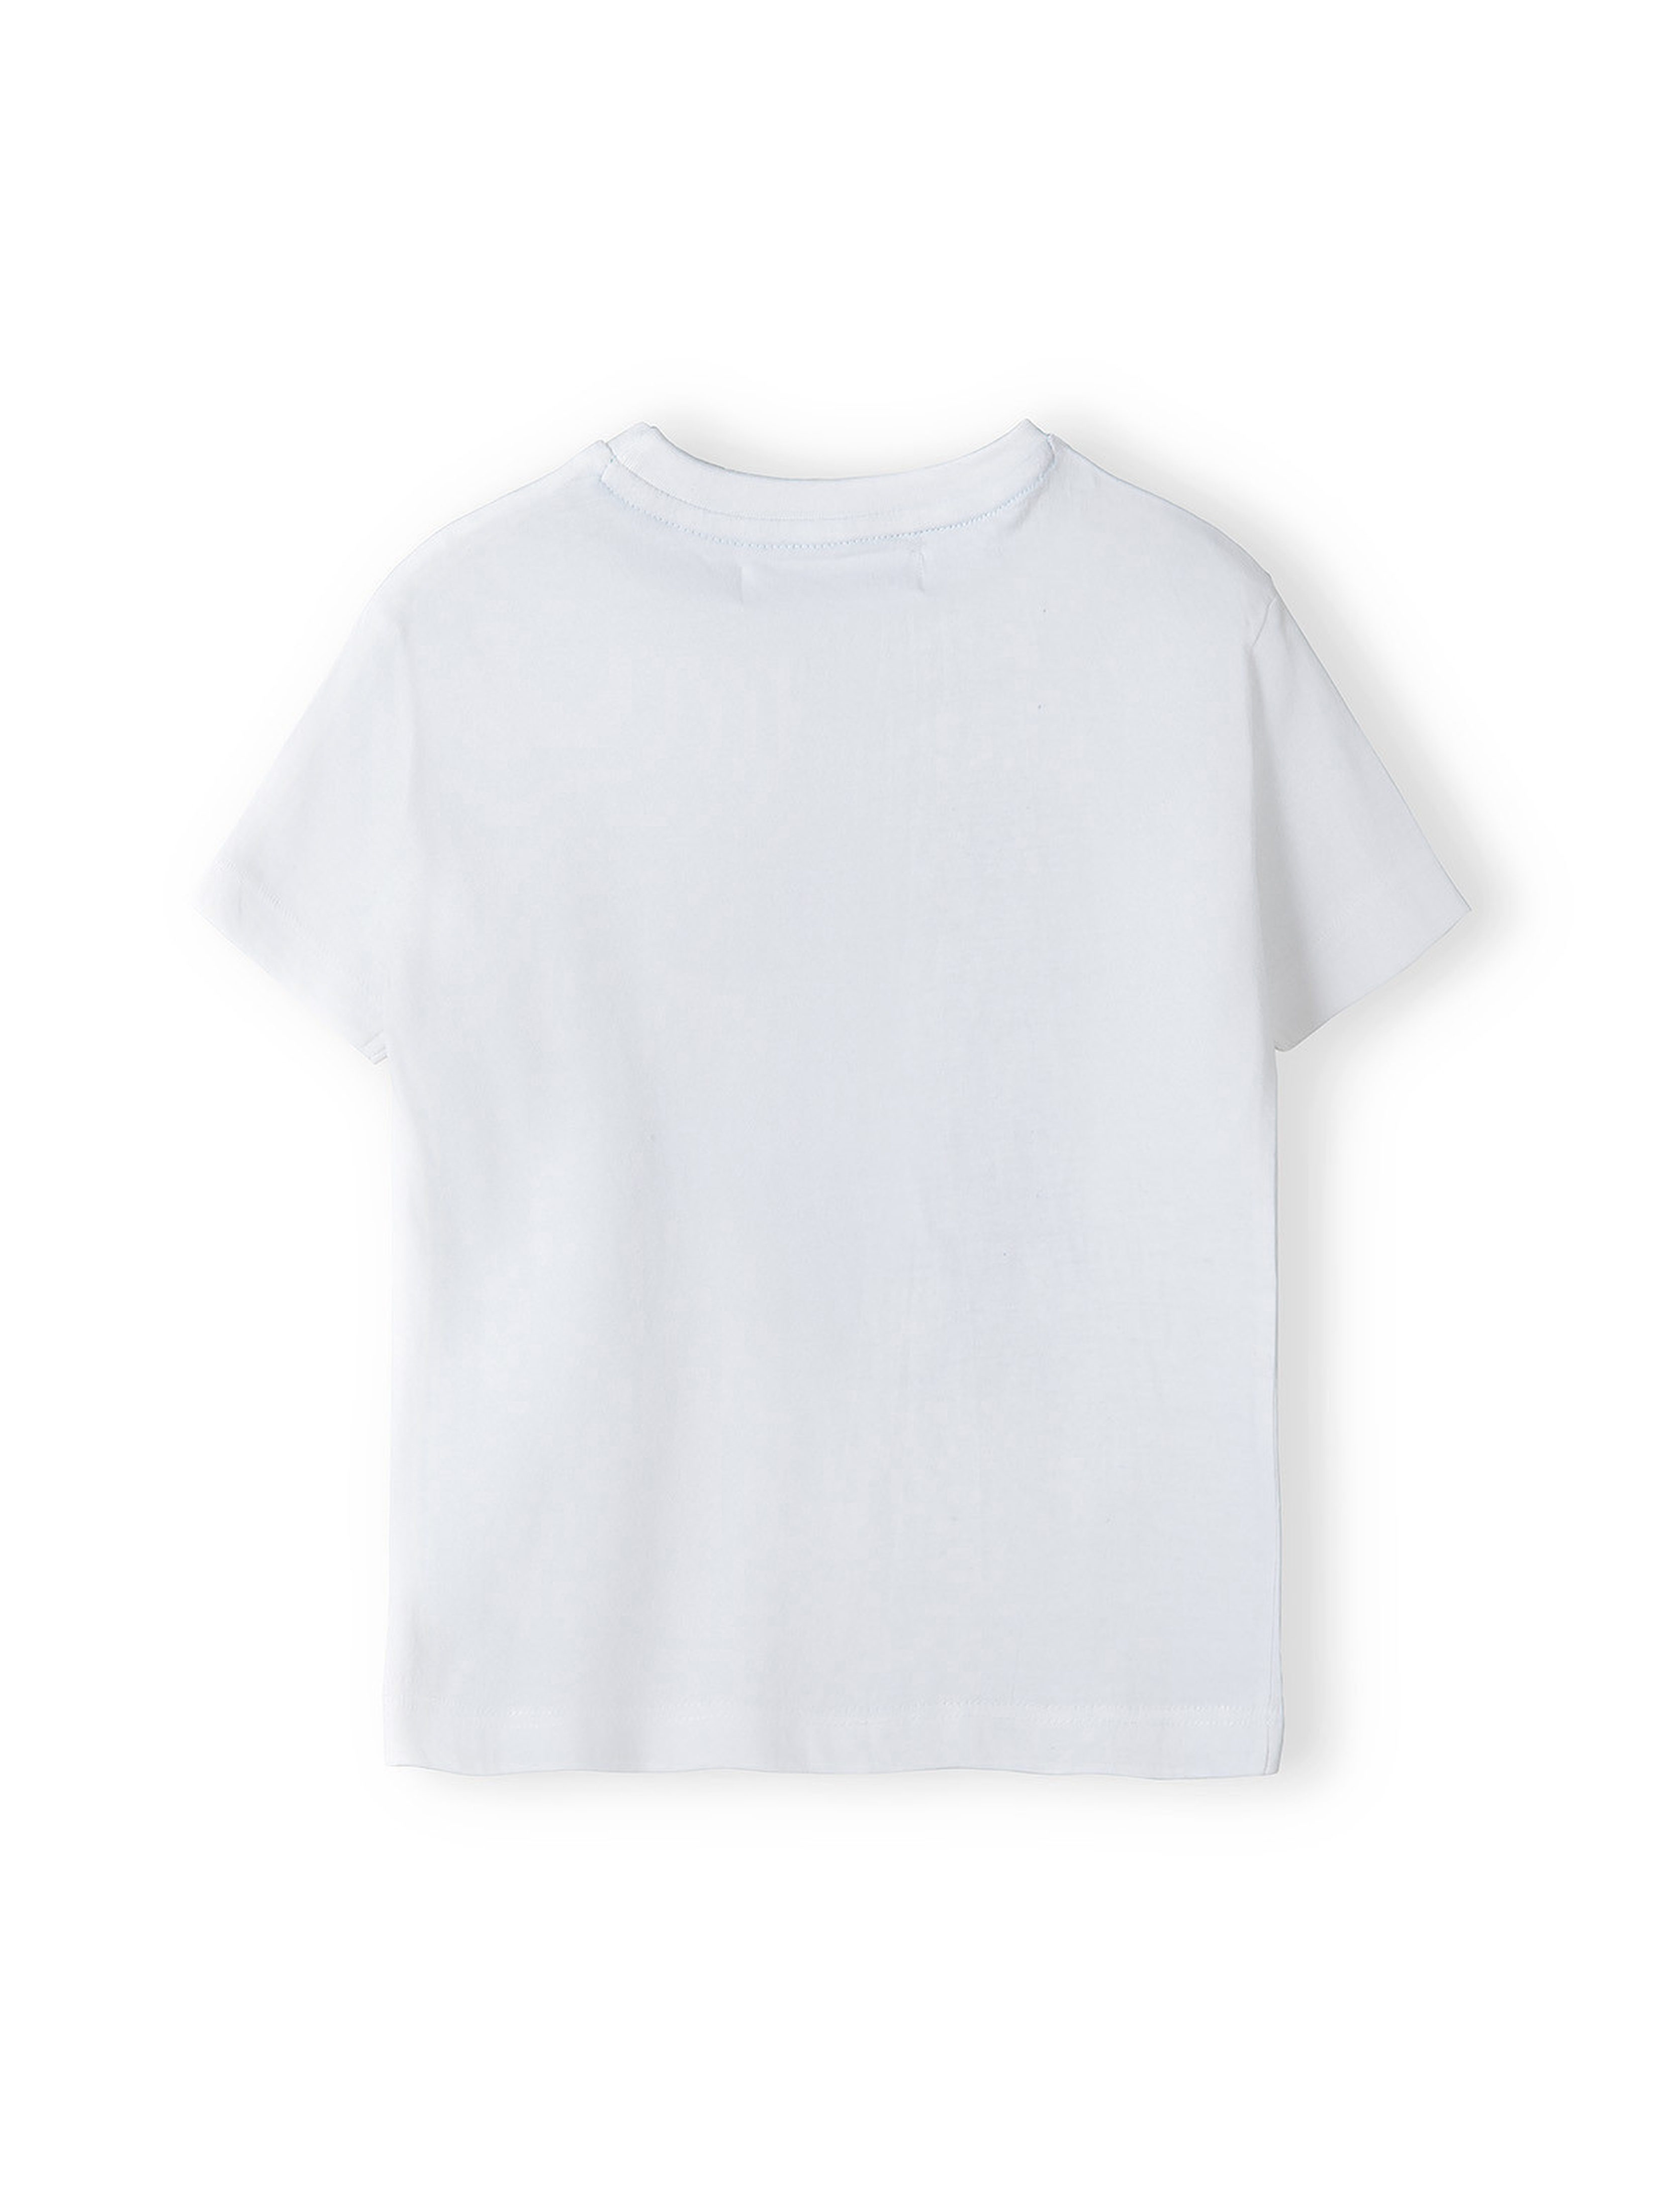 Biały t-shirt dla dużego chłopca z bawełny- RSPT